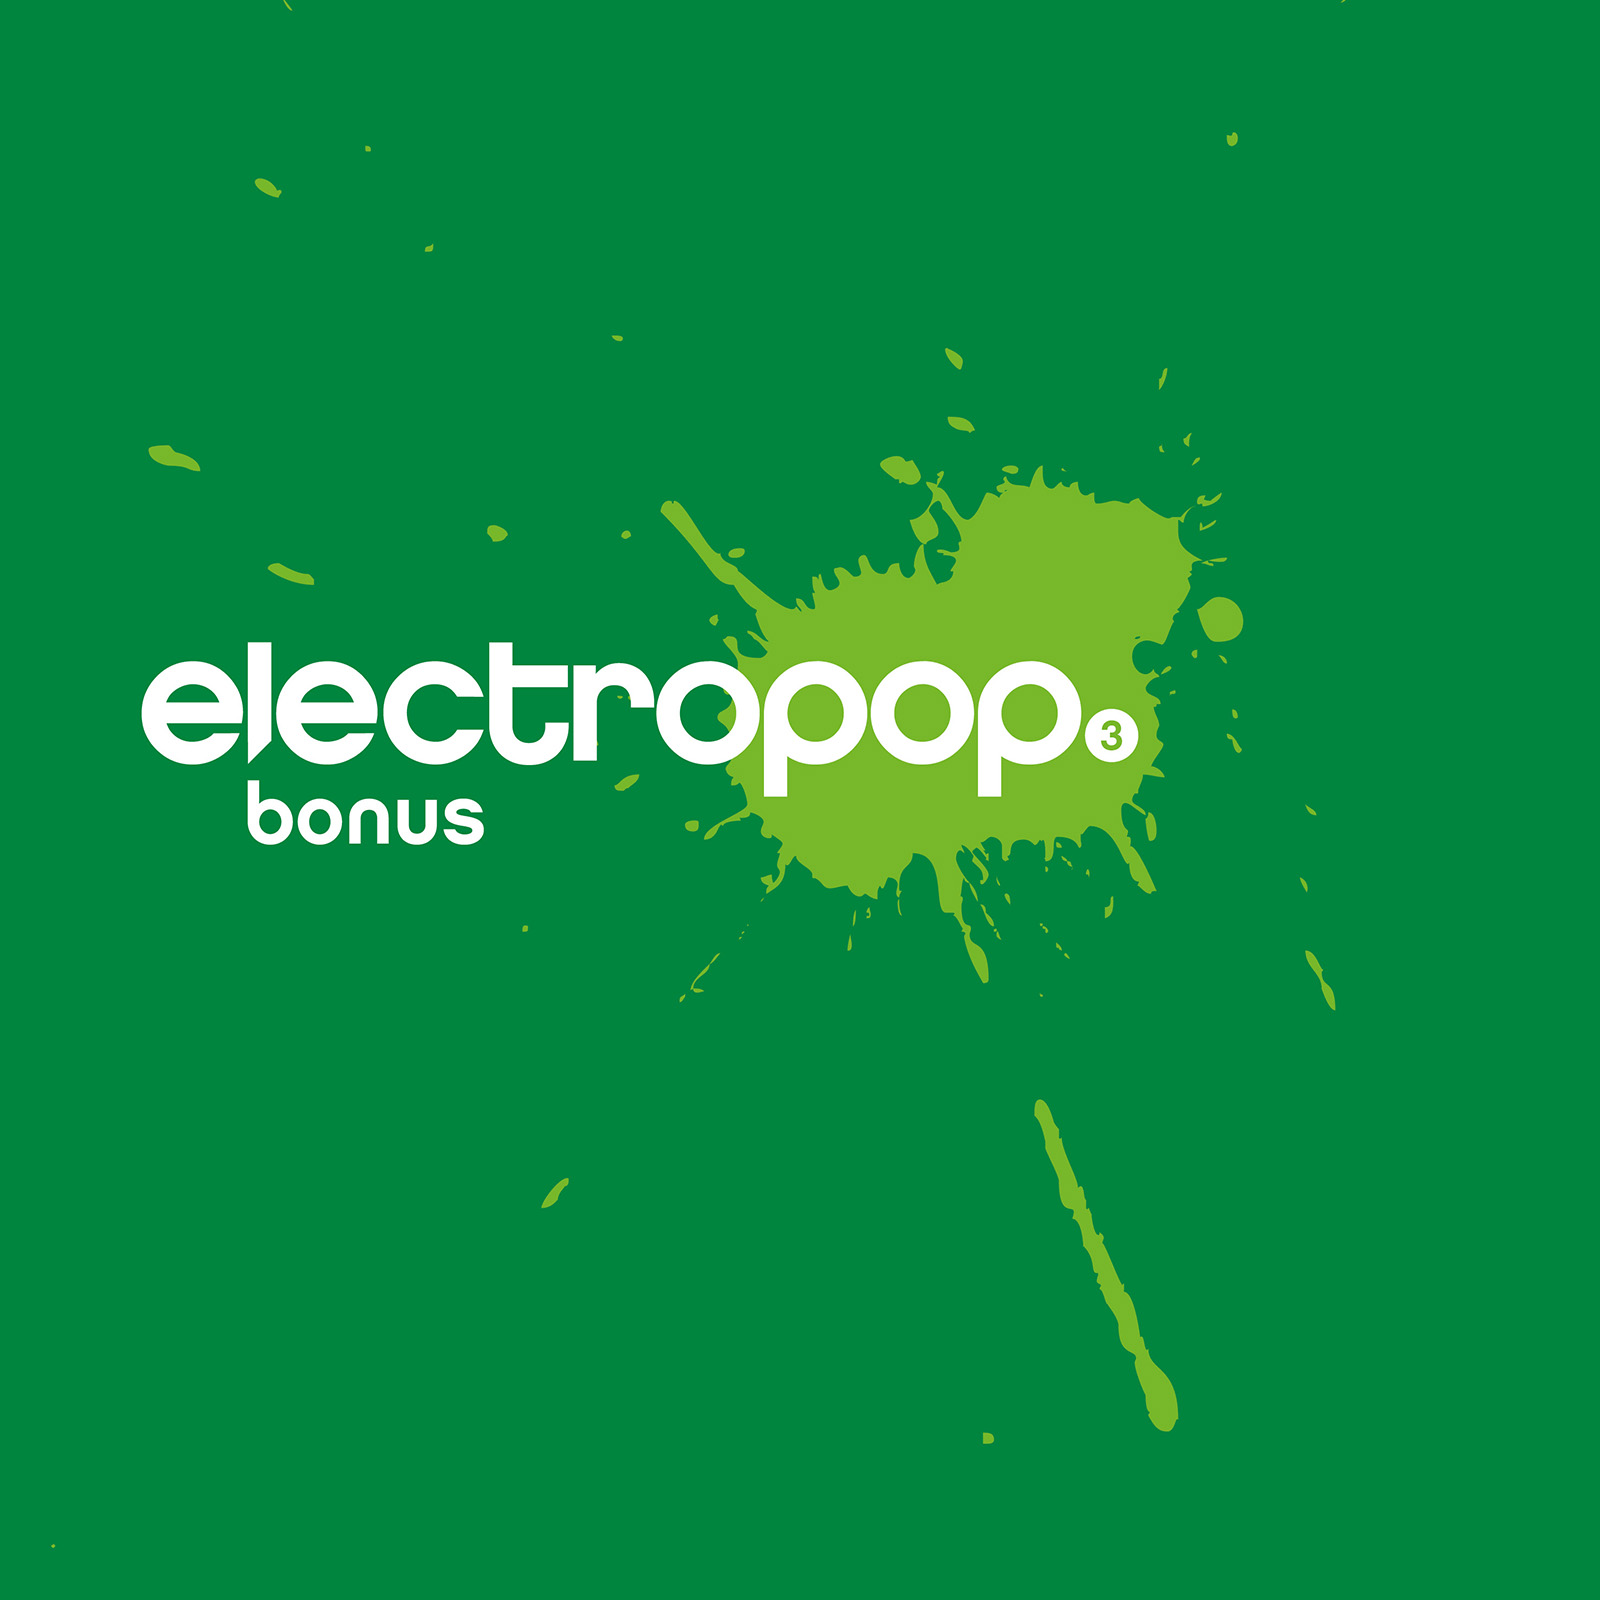 electropop.19 bonus 3